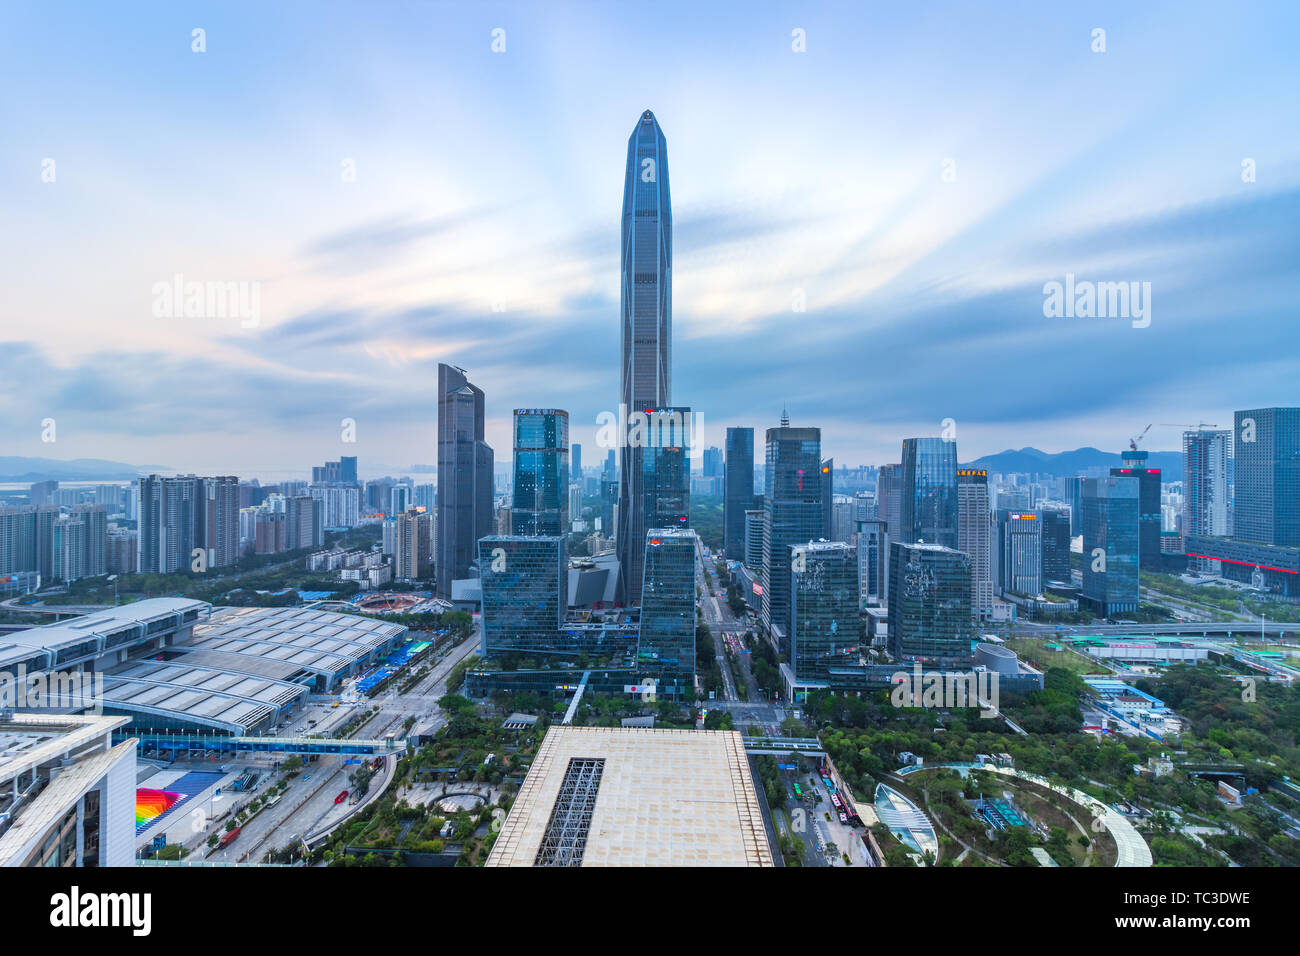 shenzhen city skyline Stock Photo